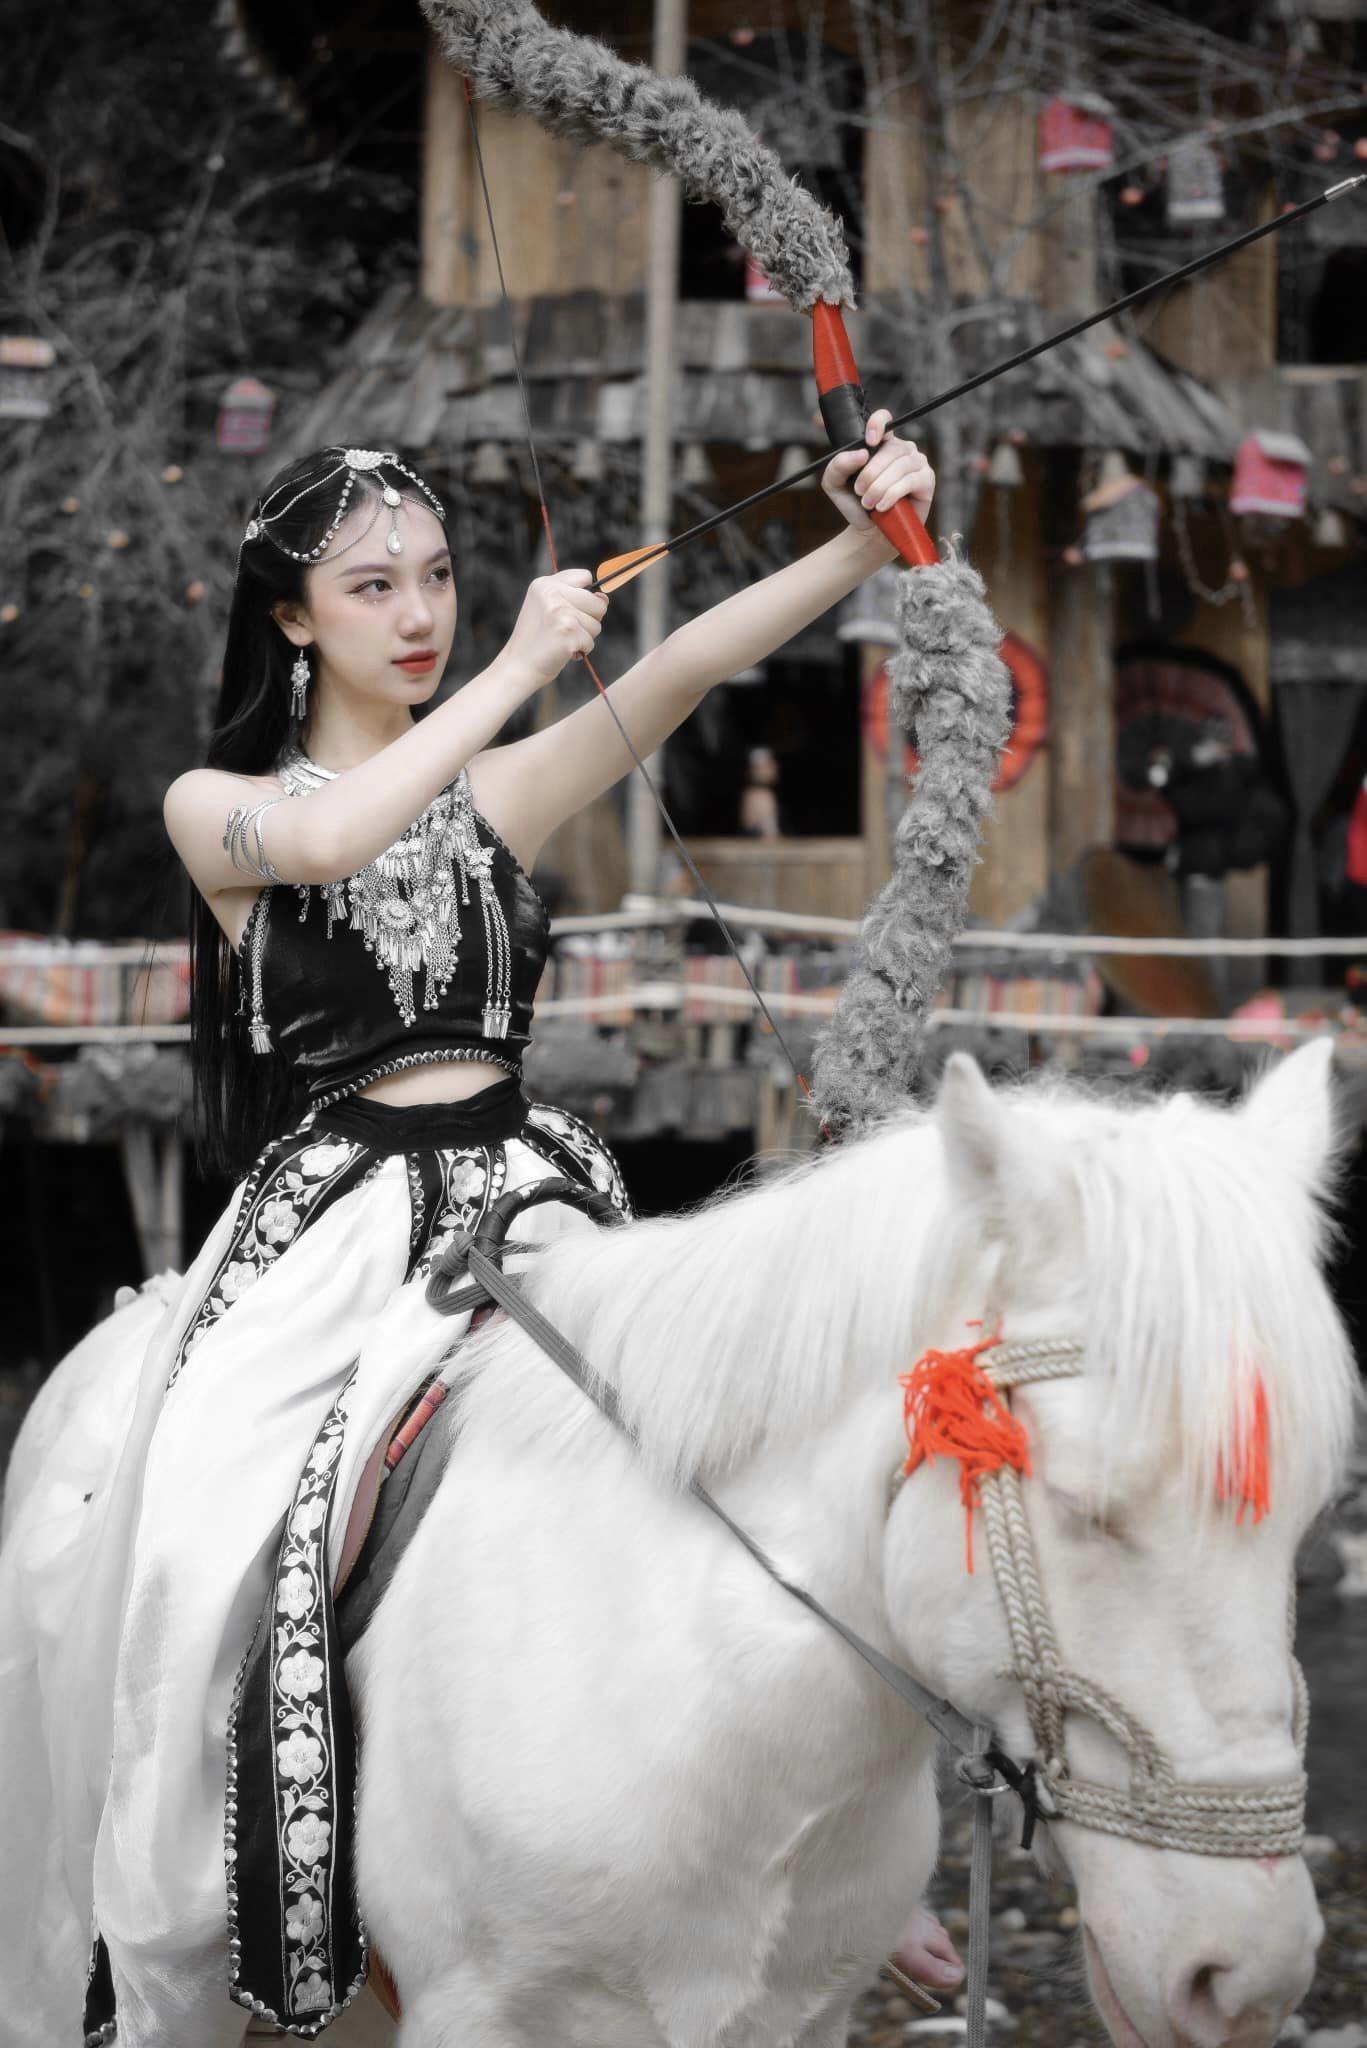 Cưỡi ngựa, bắn cung, nữ diễn viên 20 tuổi diện áo yếm khoe da trắng phát sáng, dáng nuột nà - 2